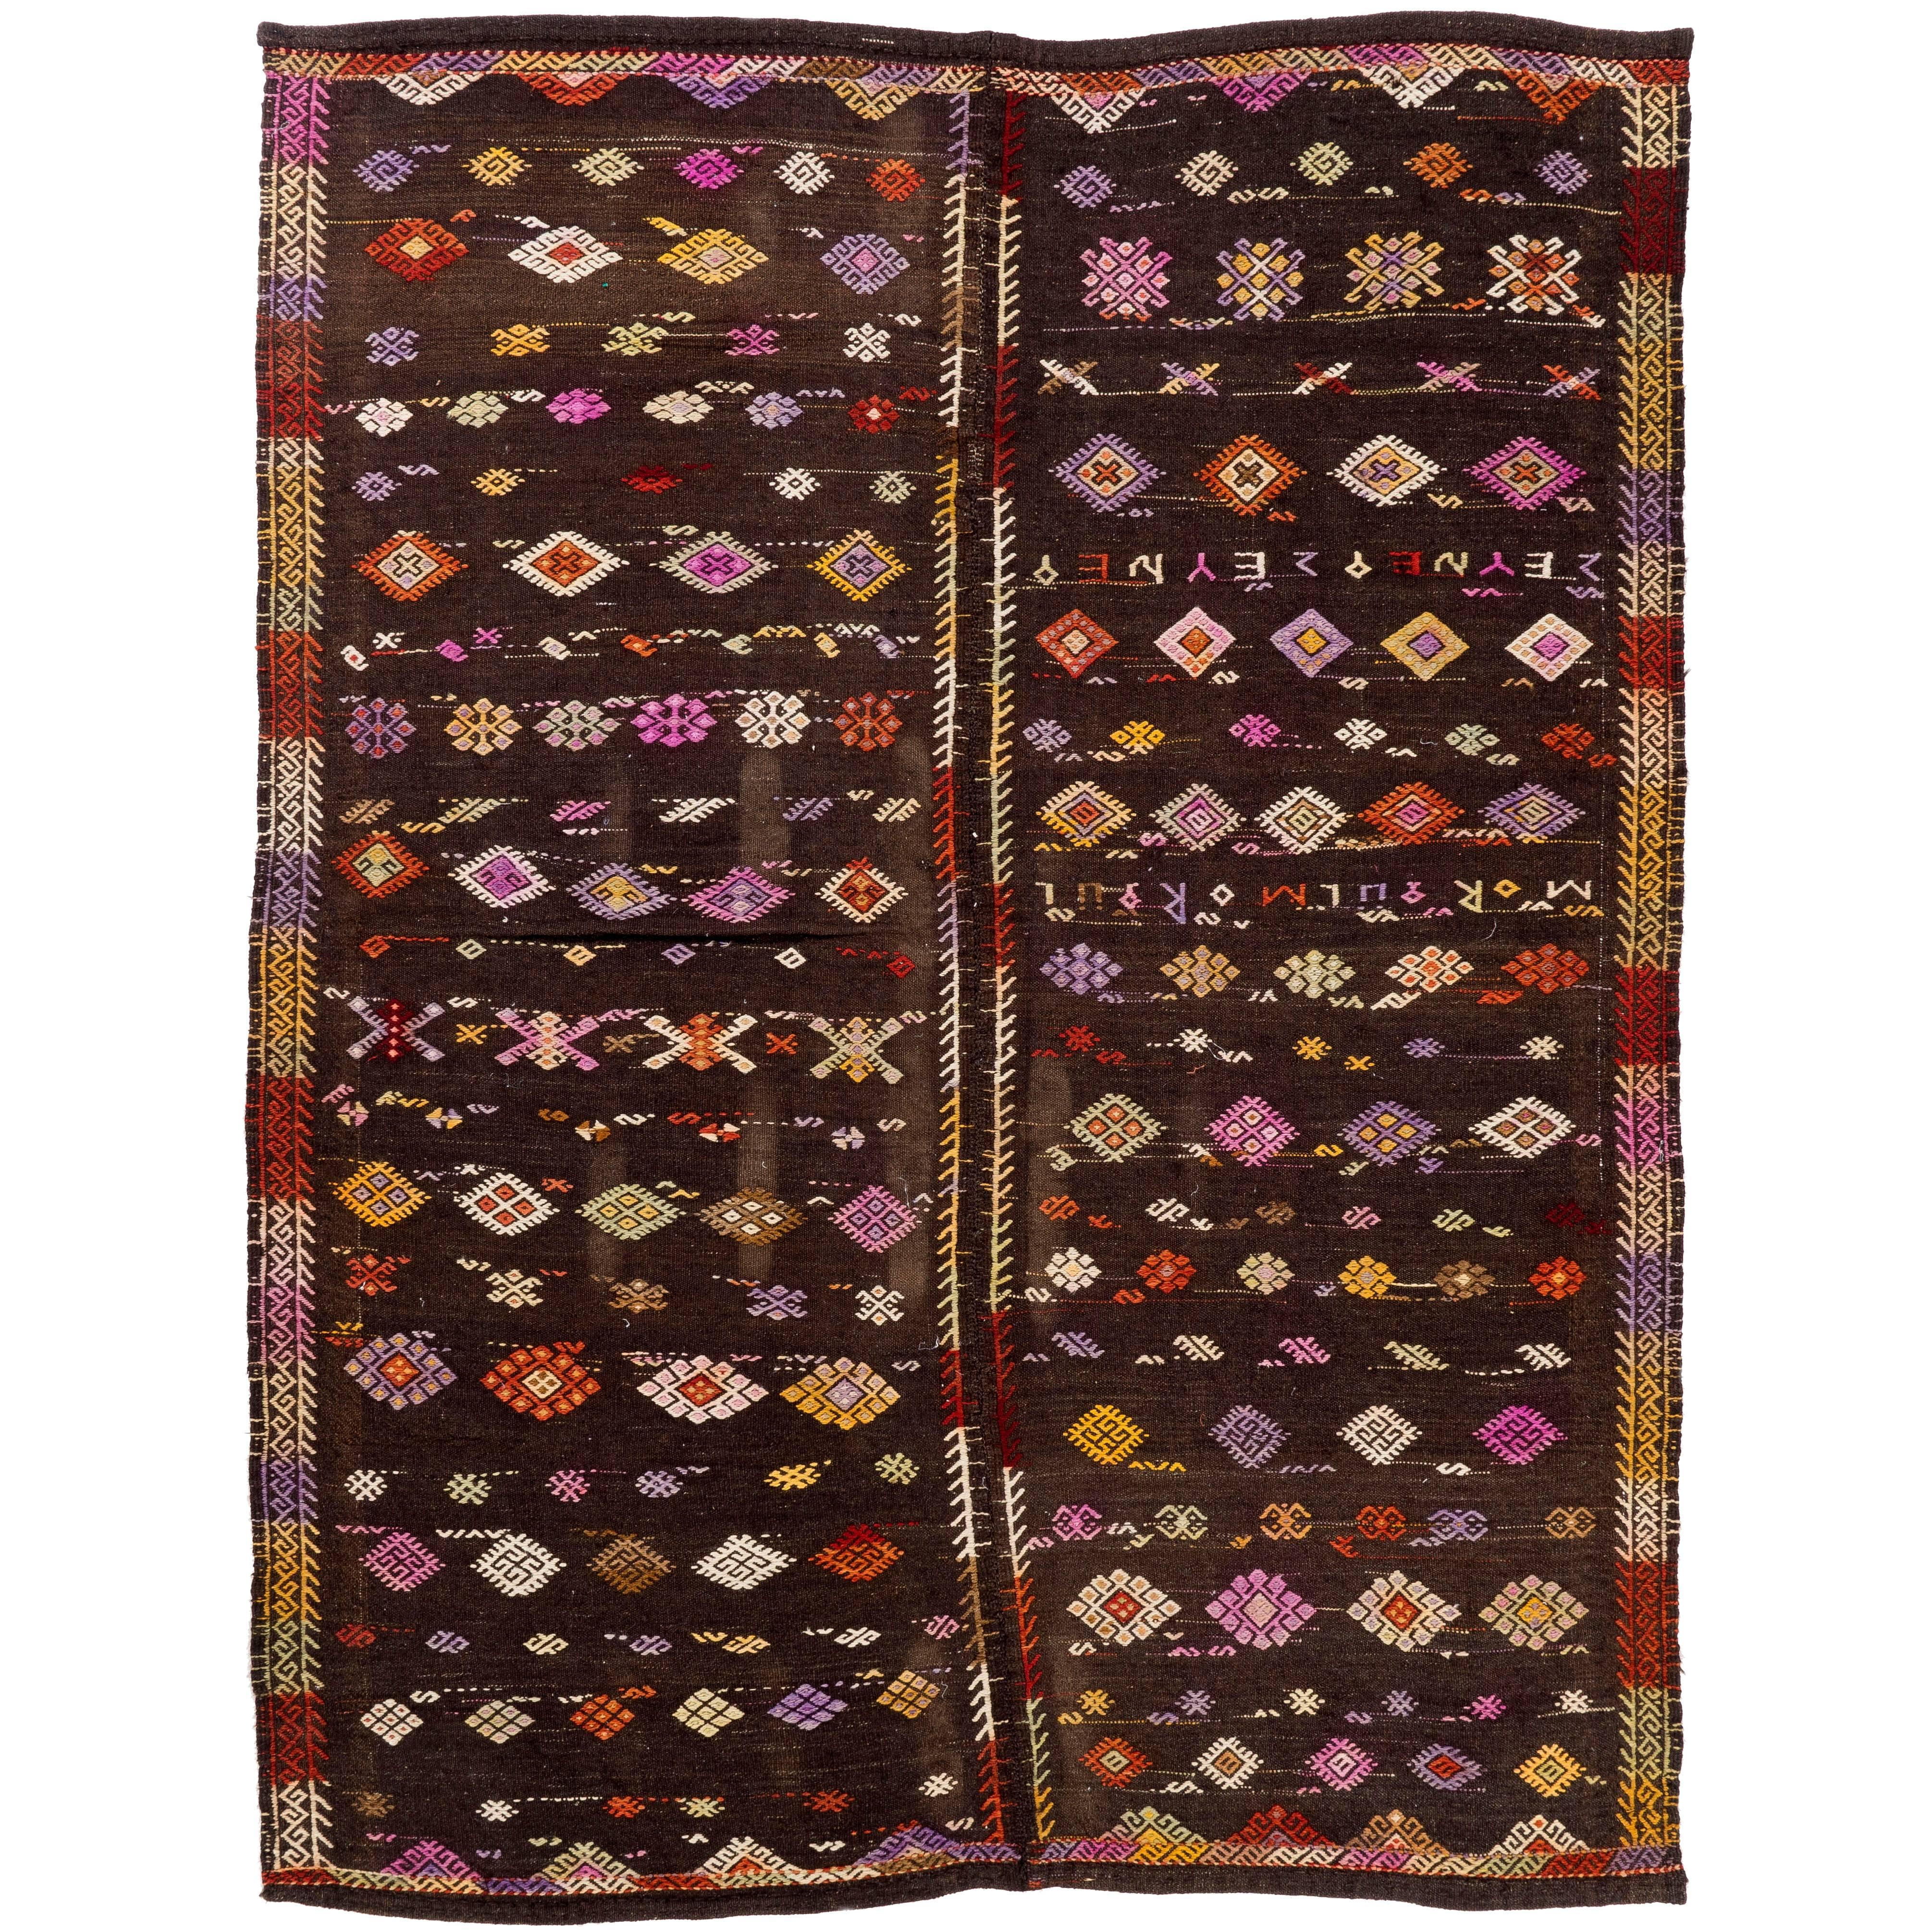 One of a Kind Anatolian Dowry Kilim, Vintage Flat-Weave Rug